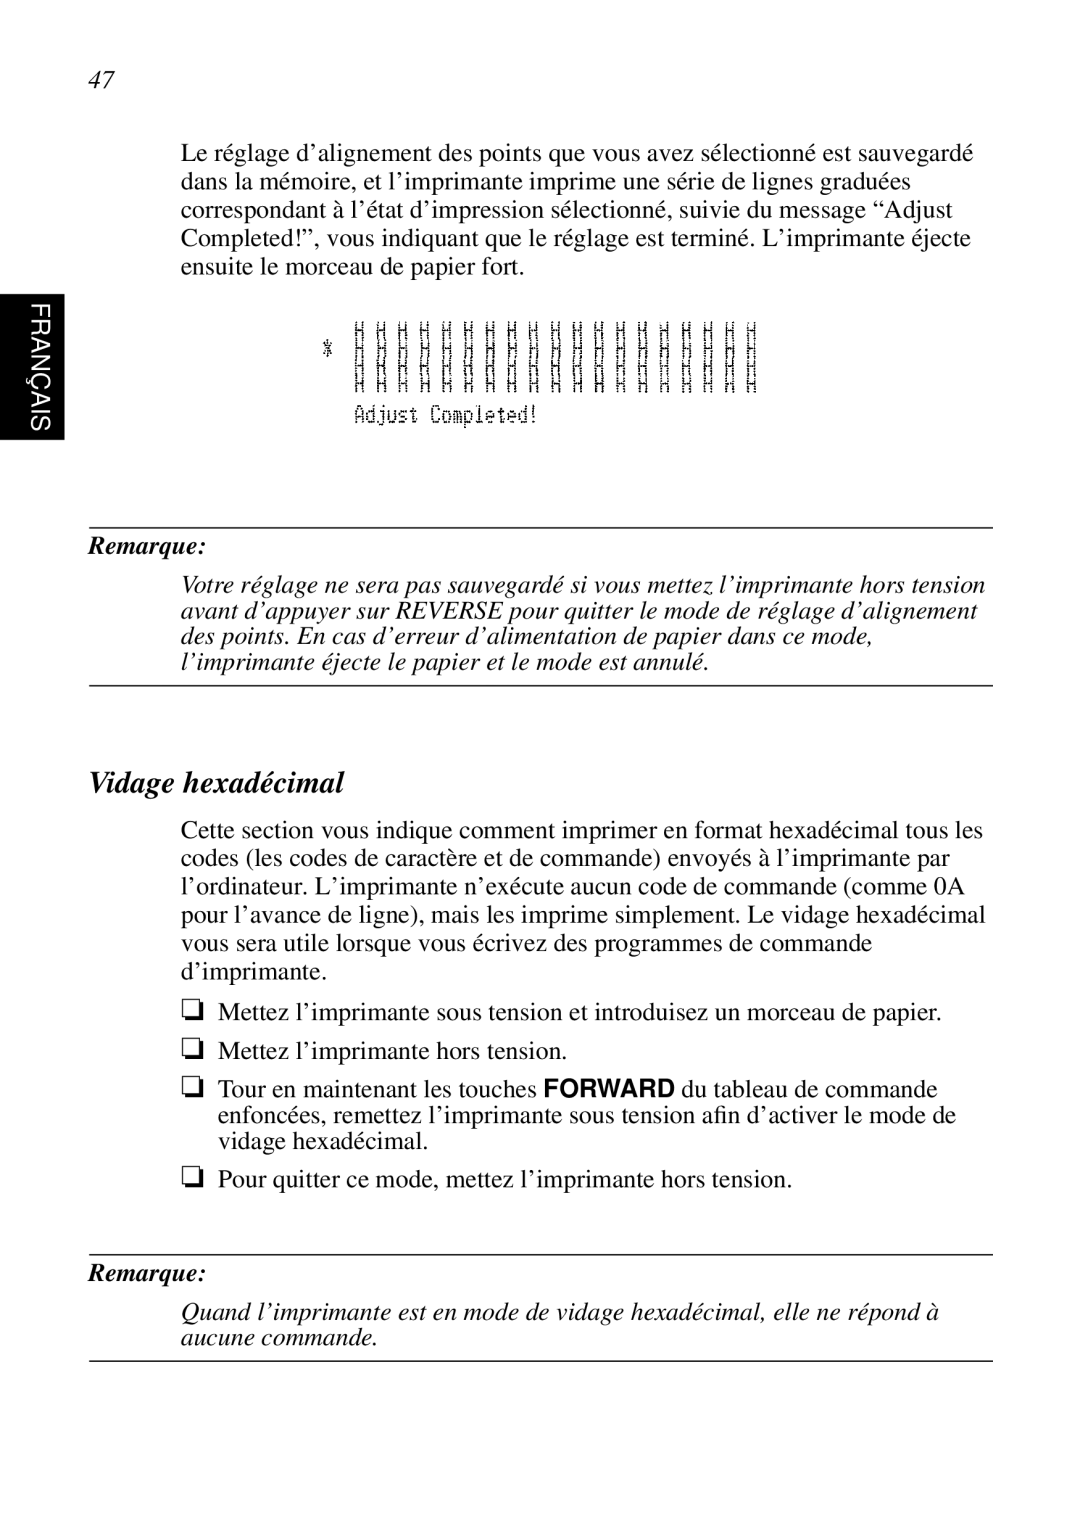 Star Micronics SP298 user manual Vidage hexadécimal, Français, Remarque 